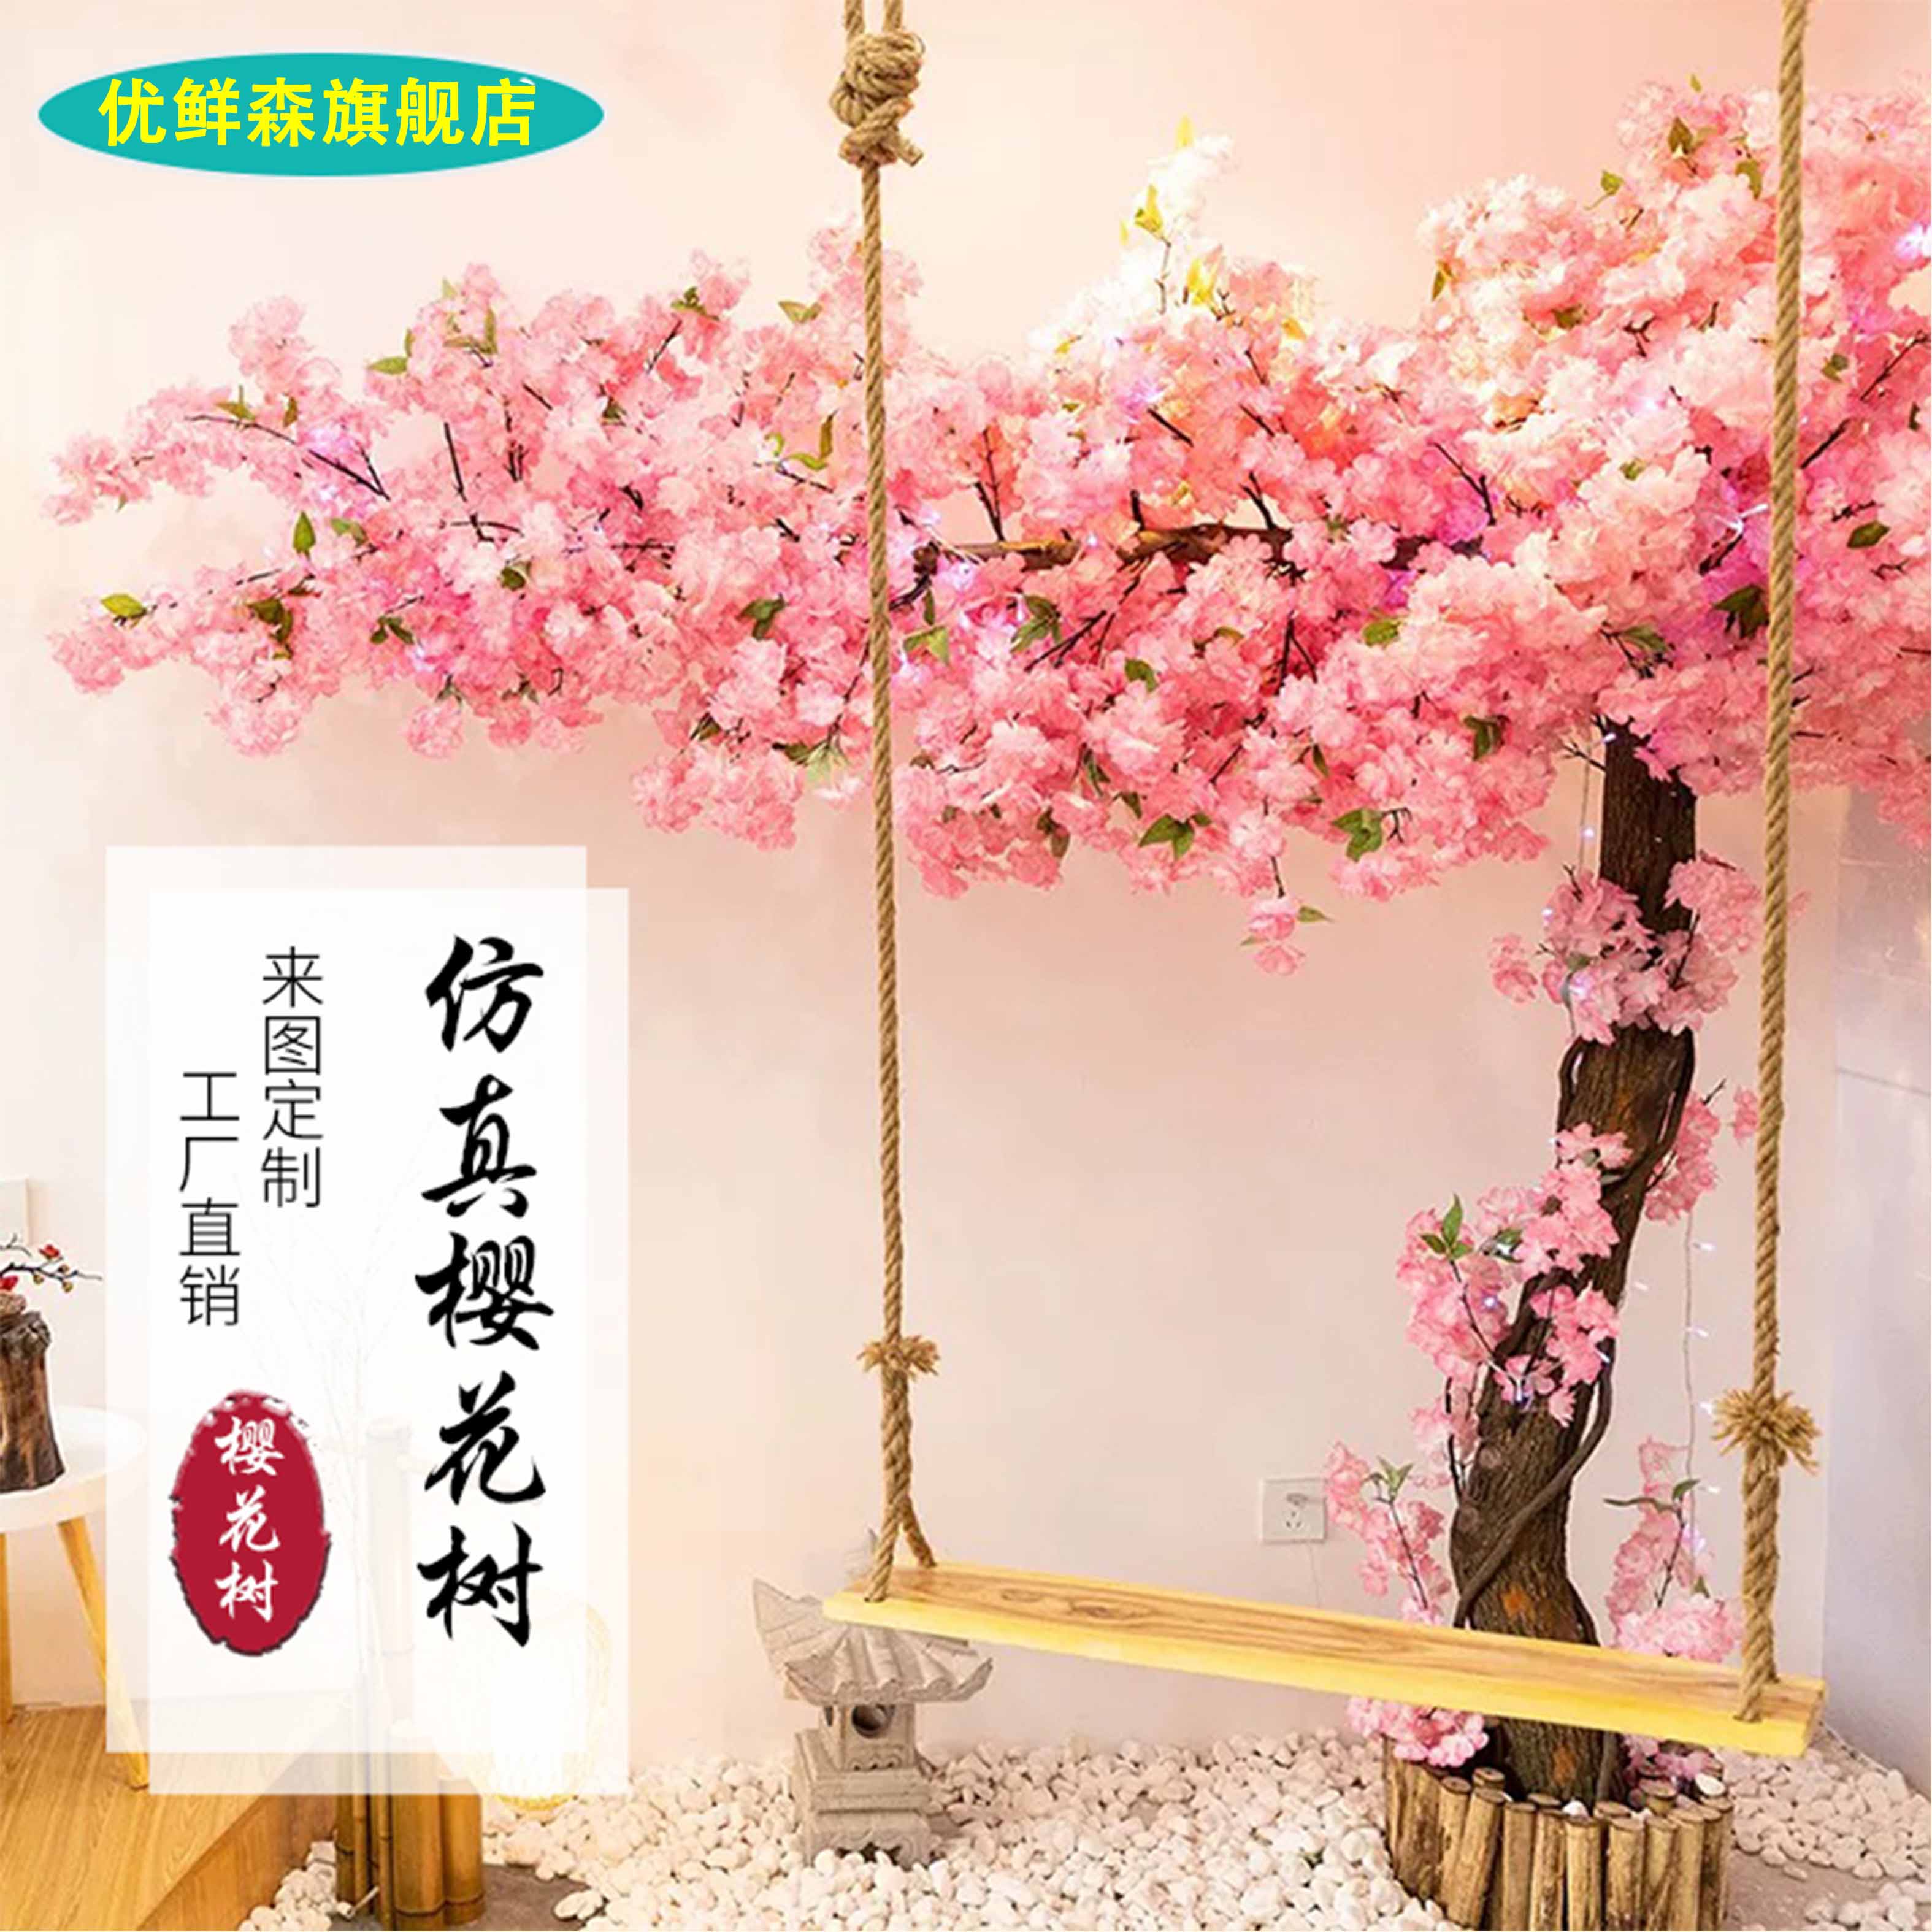 高档商场大型仿真樱花树许愿树日式室内外春天装饰造景摆件假树桃